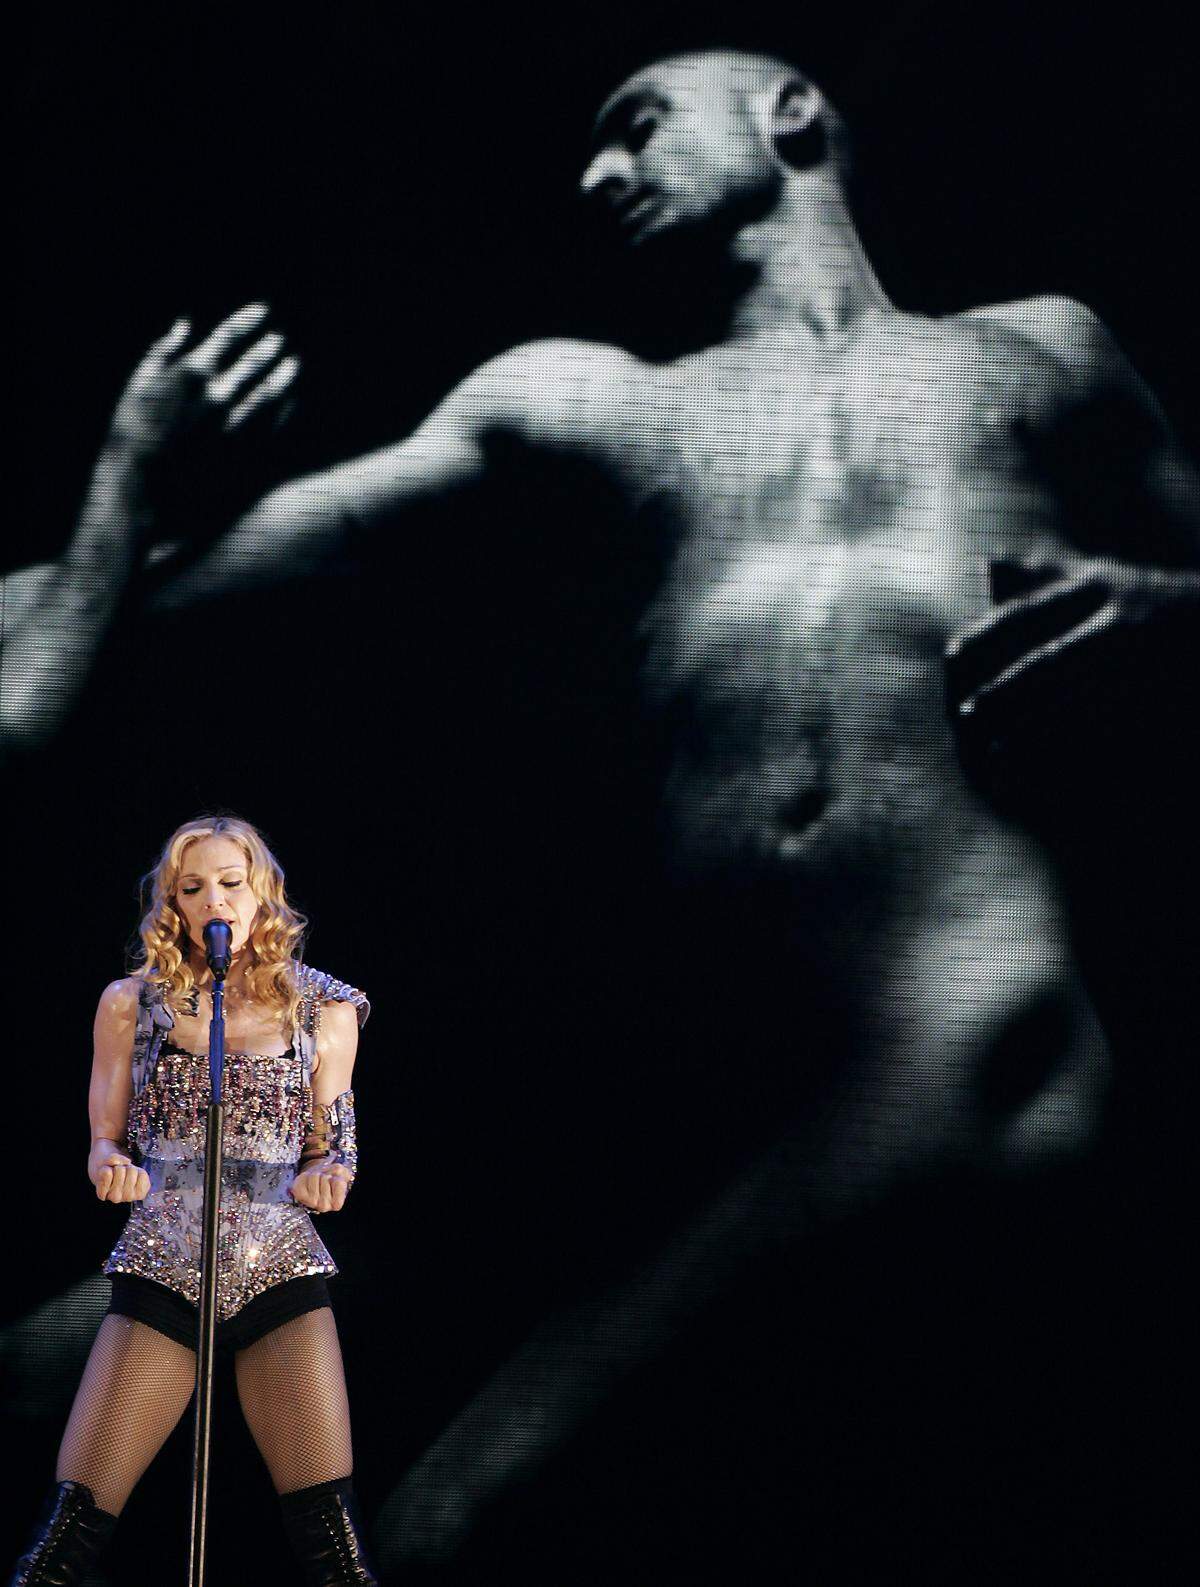 Bei der "Re-Invention World Tour" griff Madonna auf eine ganze Wagenladung von Designern zurück: Ihre Bühnenoutfits stammten von Karl Lagerfeld, Stella McCartney und Christian Lacroix.